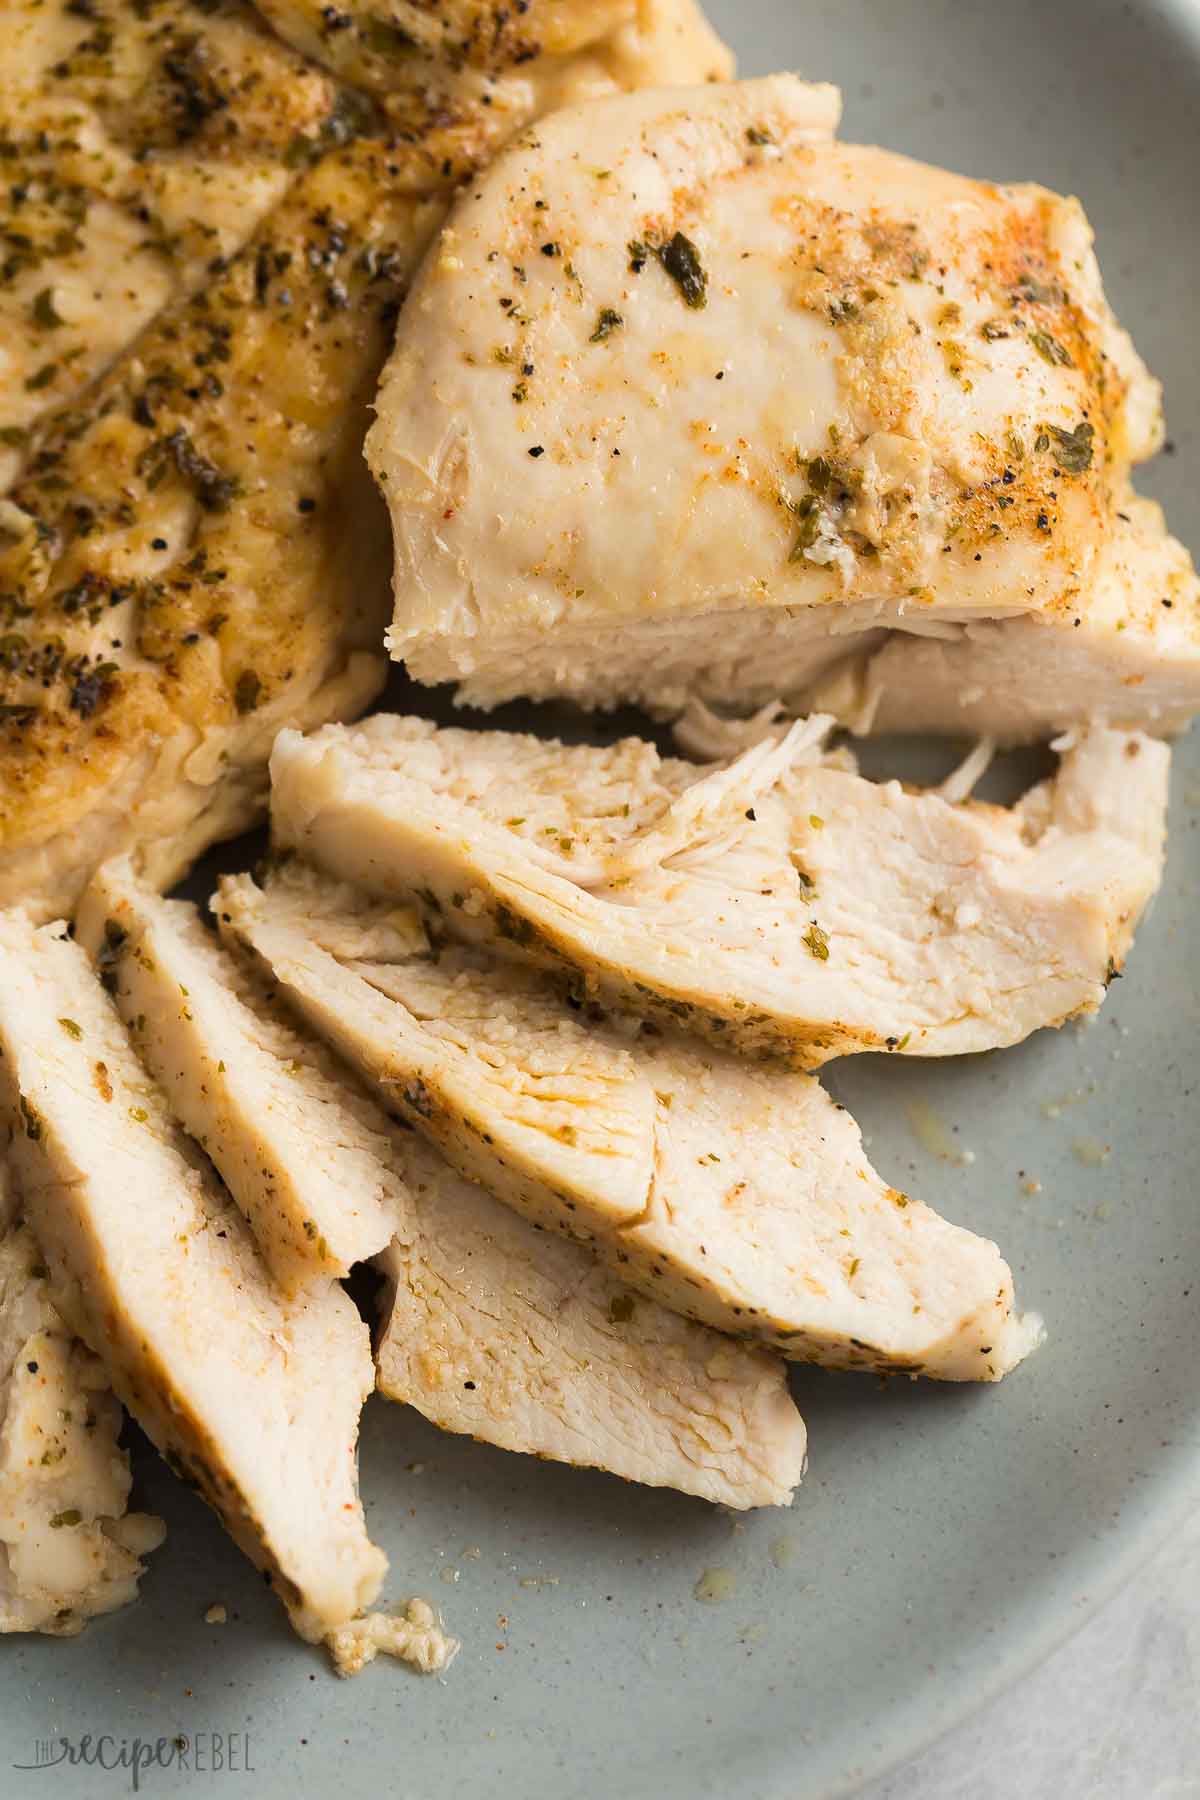 Juicy Instant Pot Chicken Breast - The Recipe Rebel